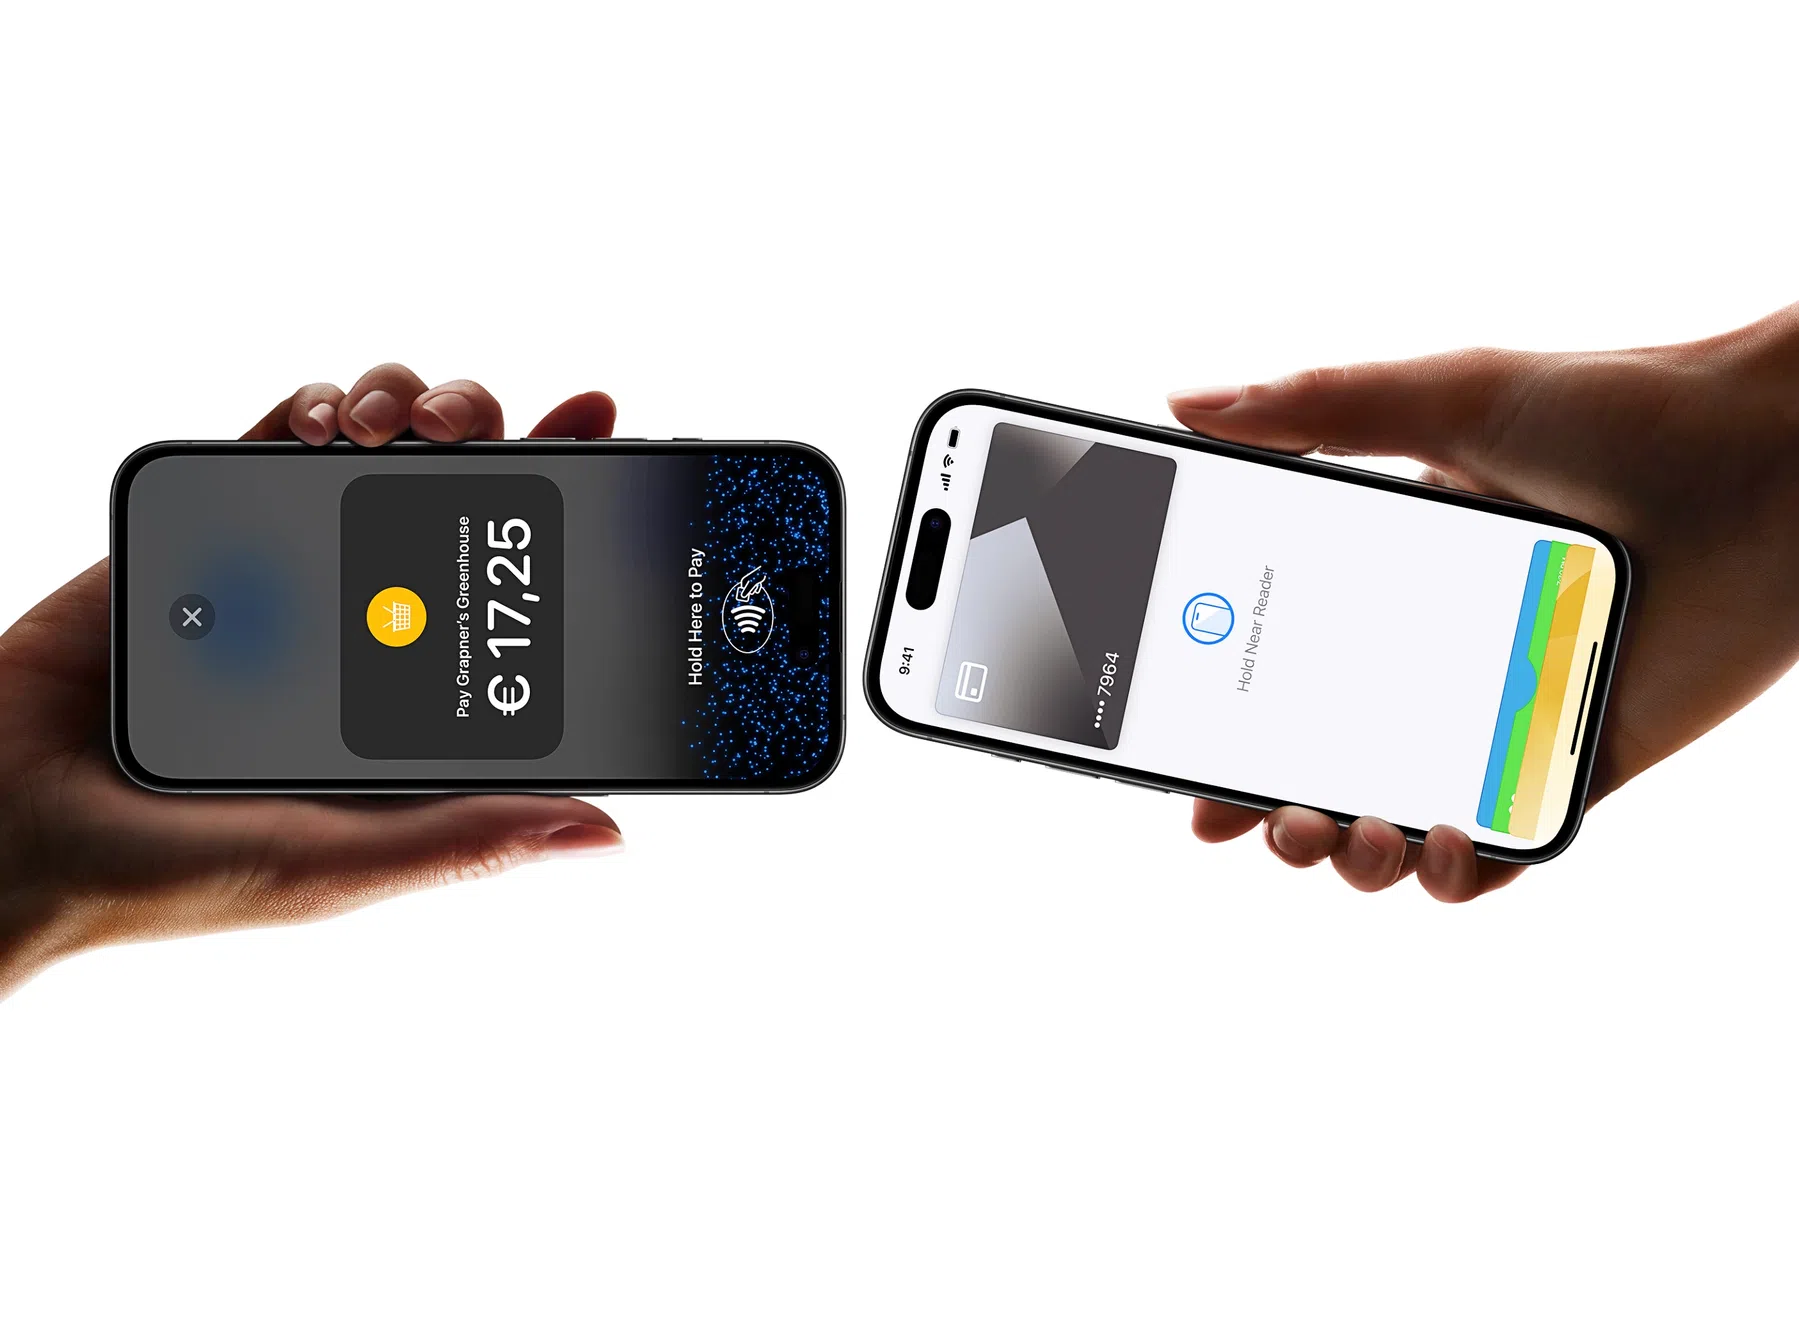 Binnenkort geen Apple Pay meer nodig voor contactloos betalen met de iPhone